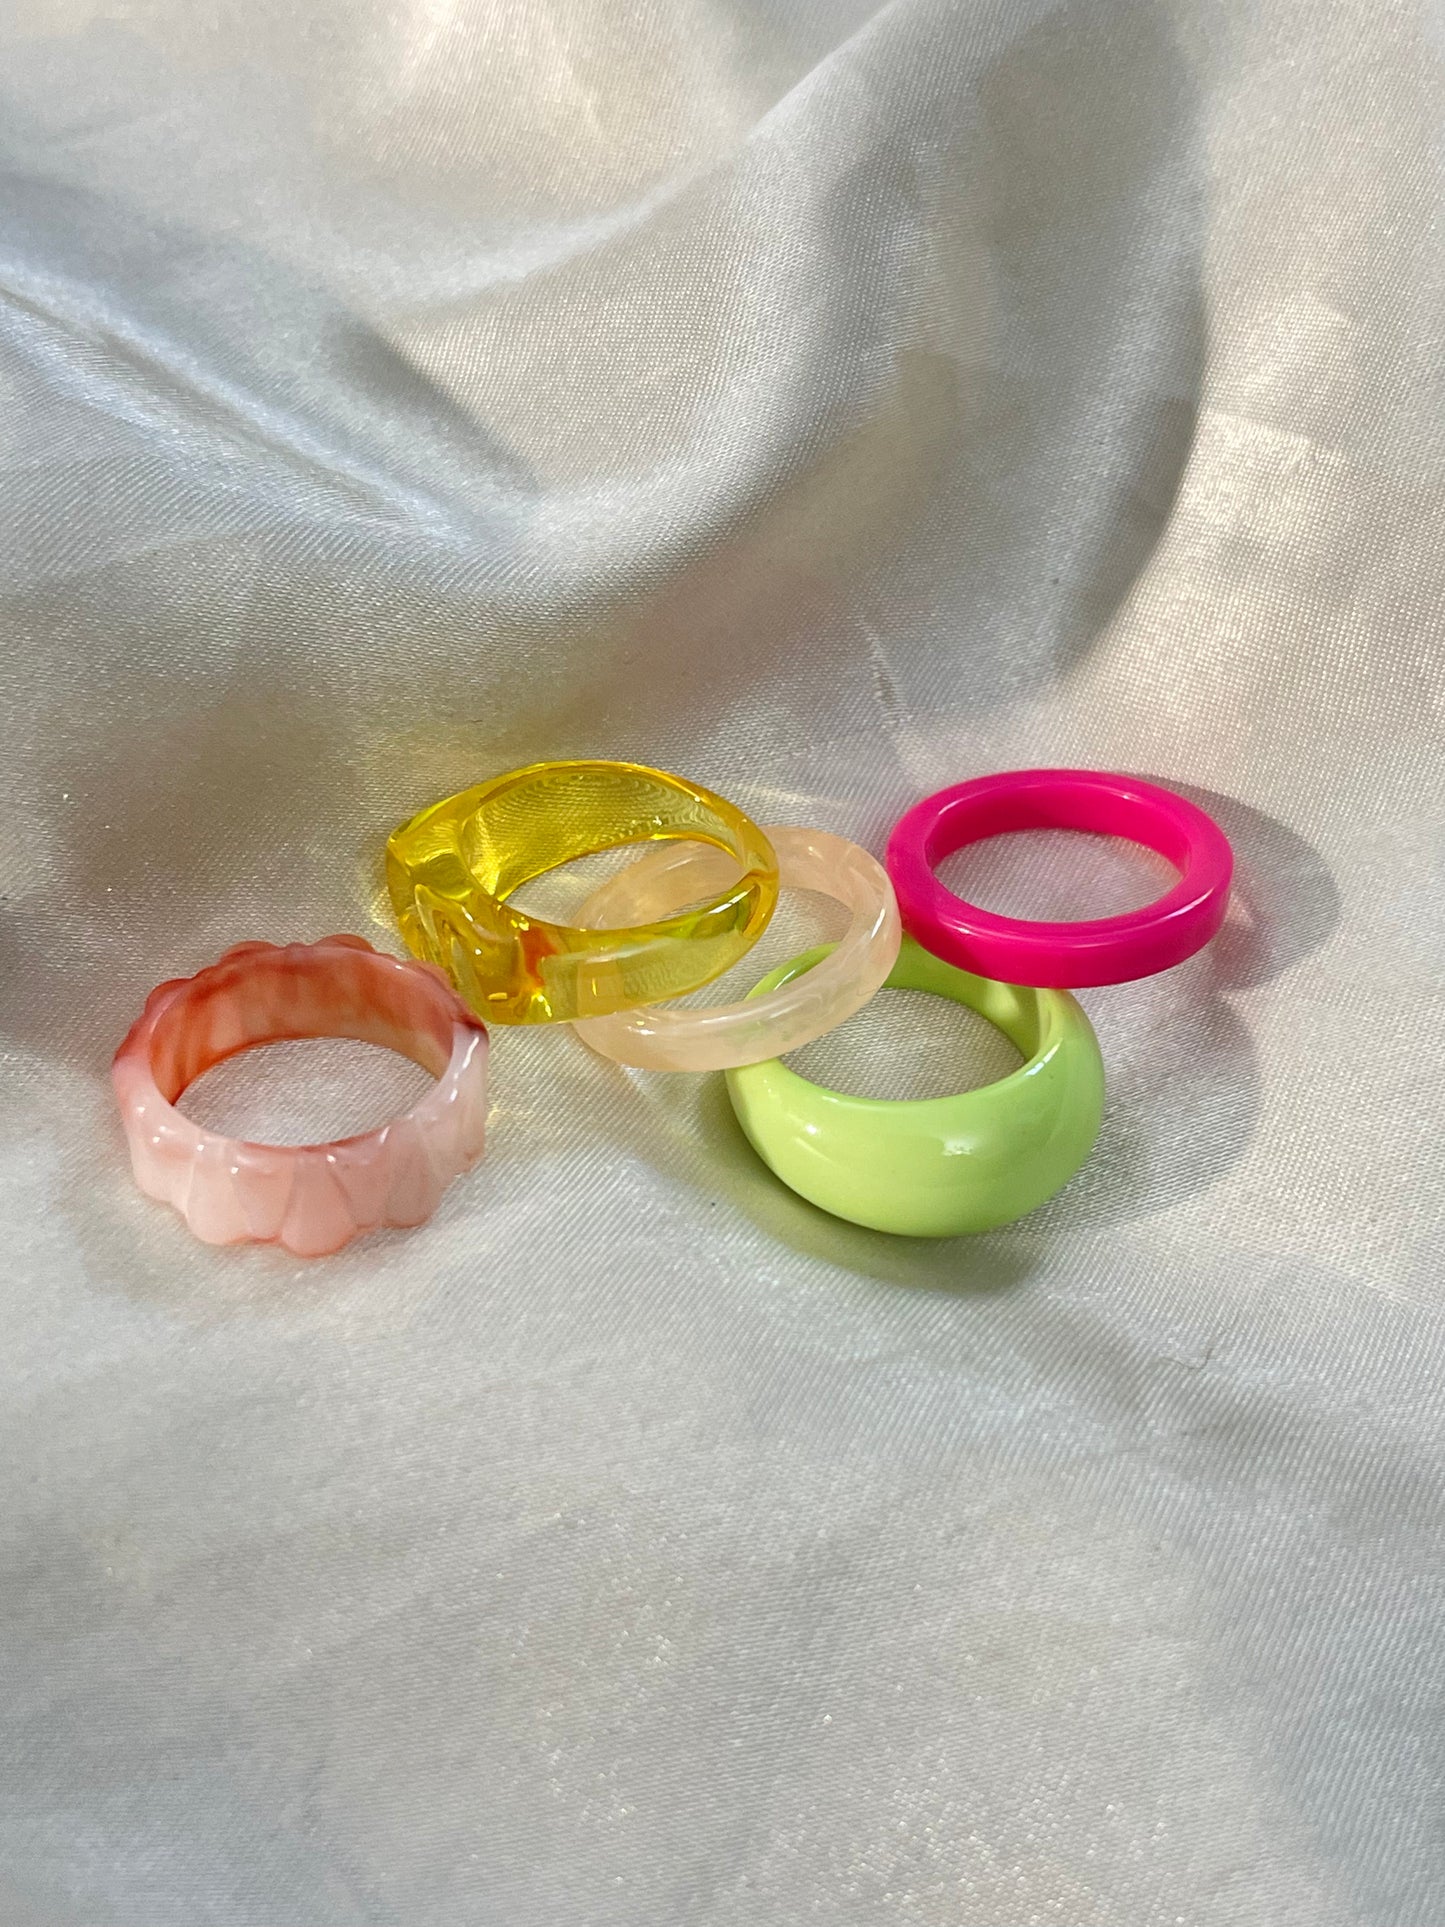 Waterproof Rainbow Rings 2.0